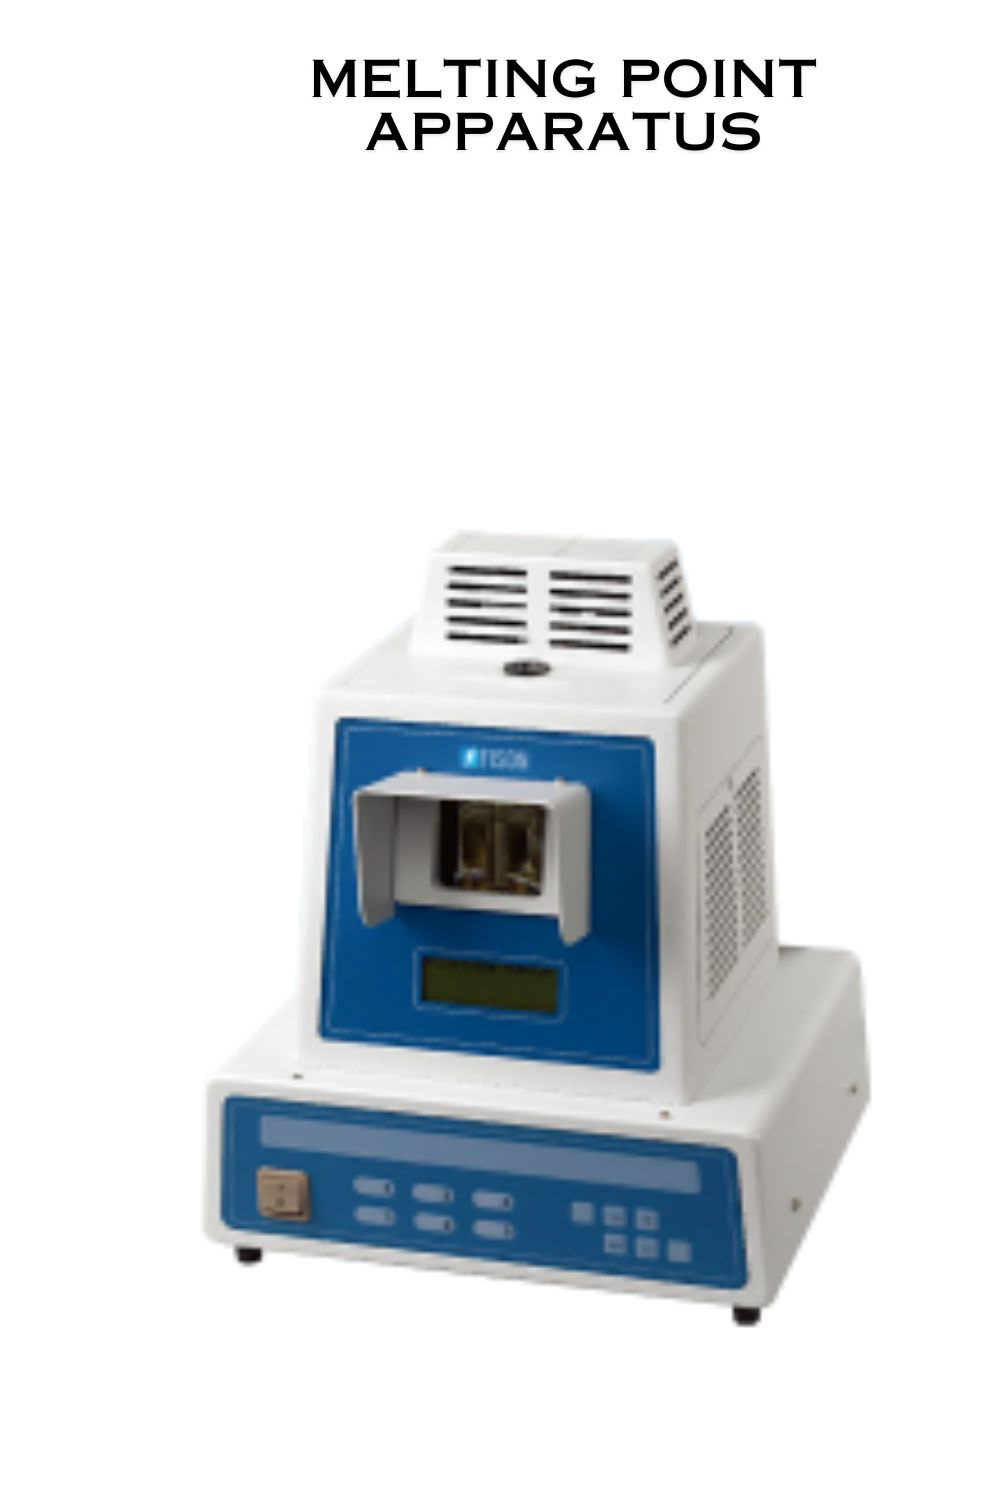 microscope digital microscope temperature control